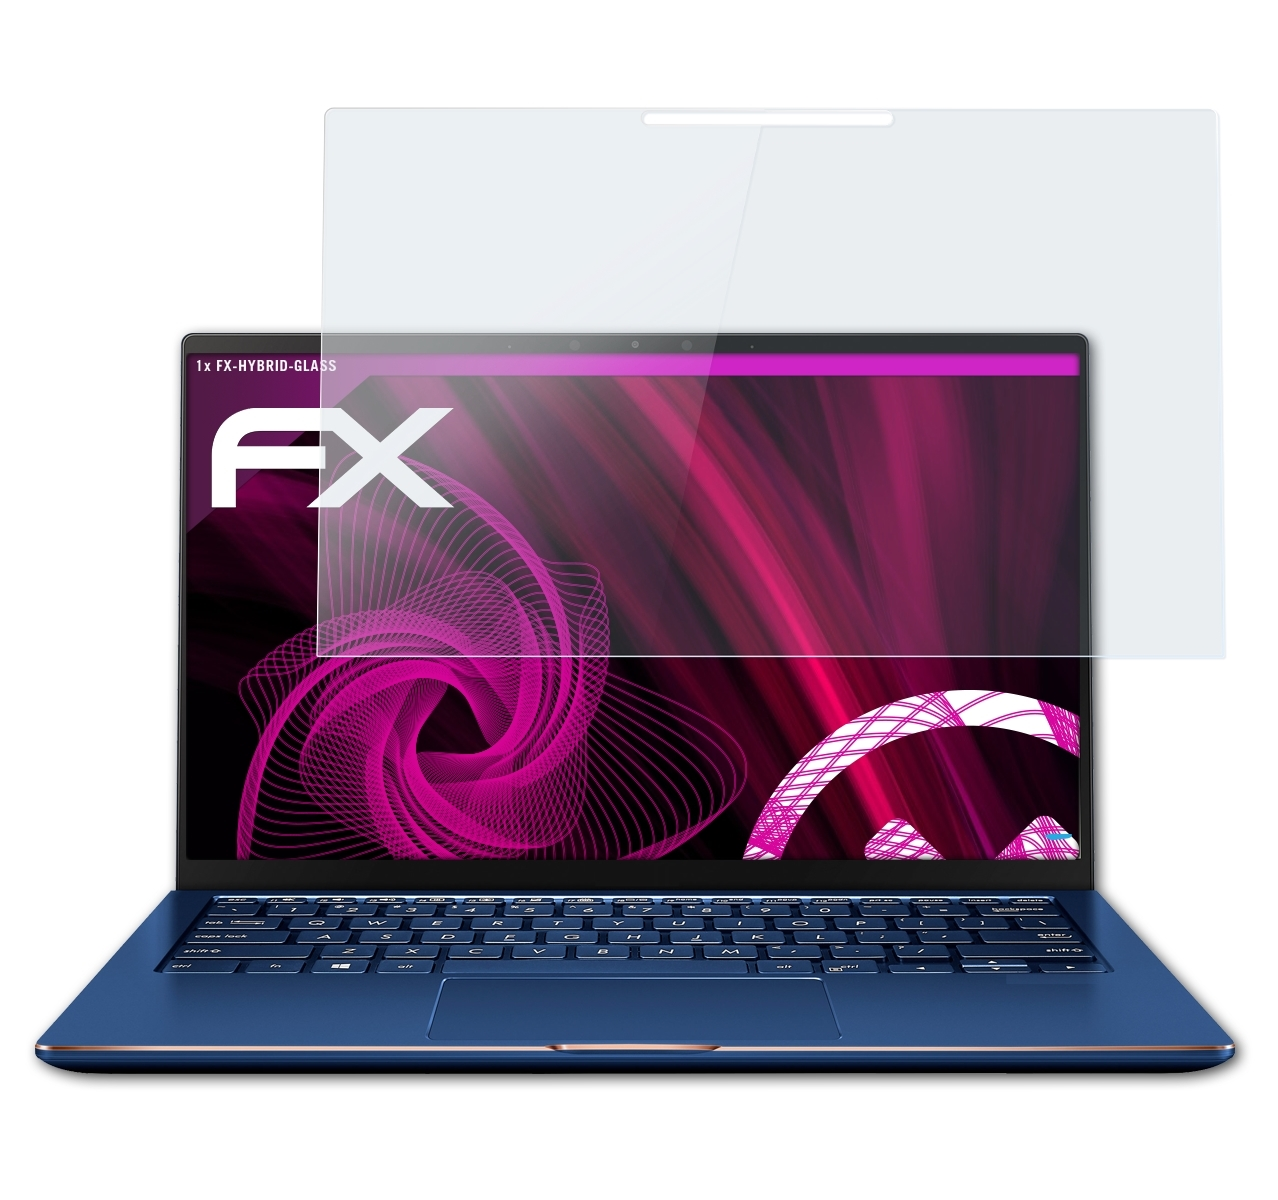 (UX562FD)) Flip FX-Hybrid-Glass 15 ZenBook Schutzglas(für Asus ATFOLIX